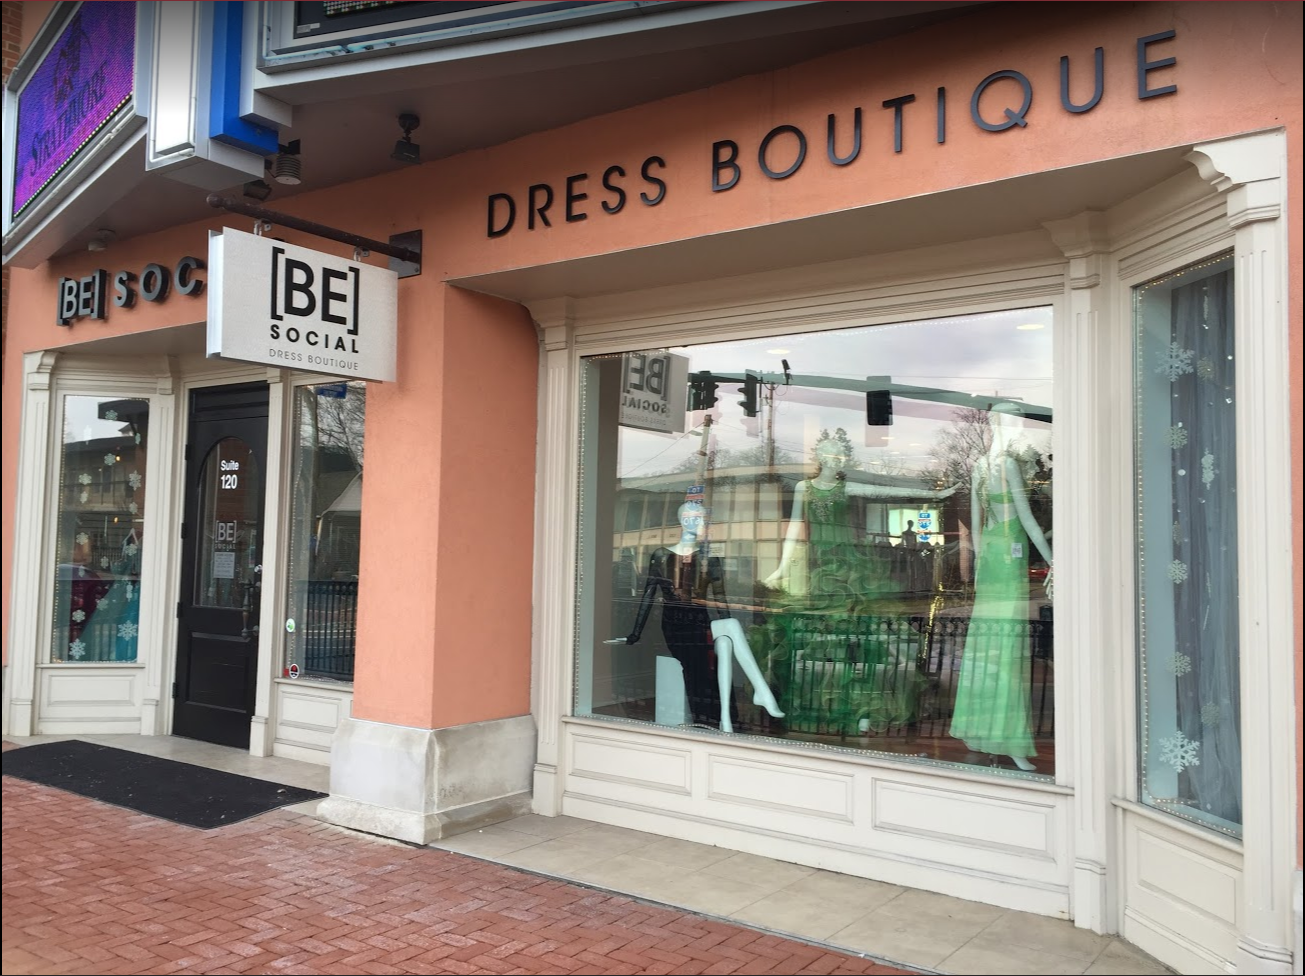 [BE] SOCIAL Dress Boutique Photo